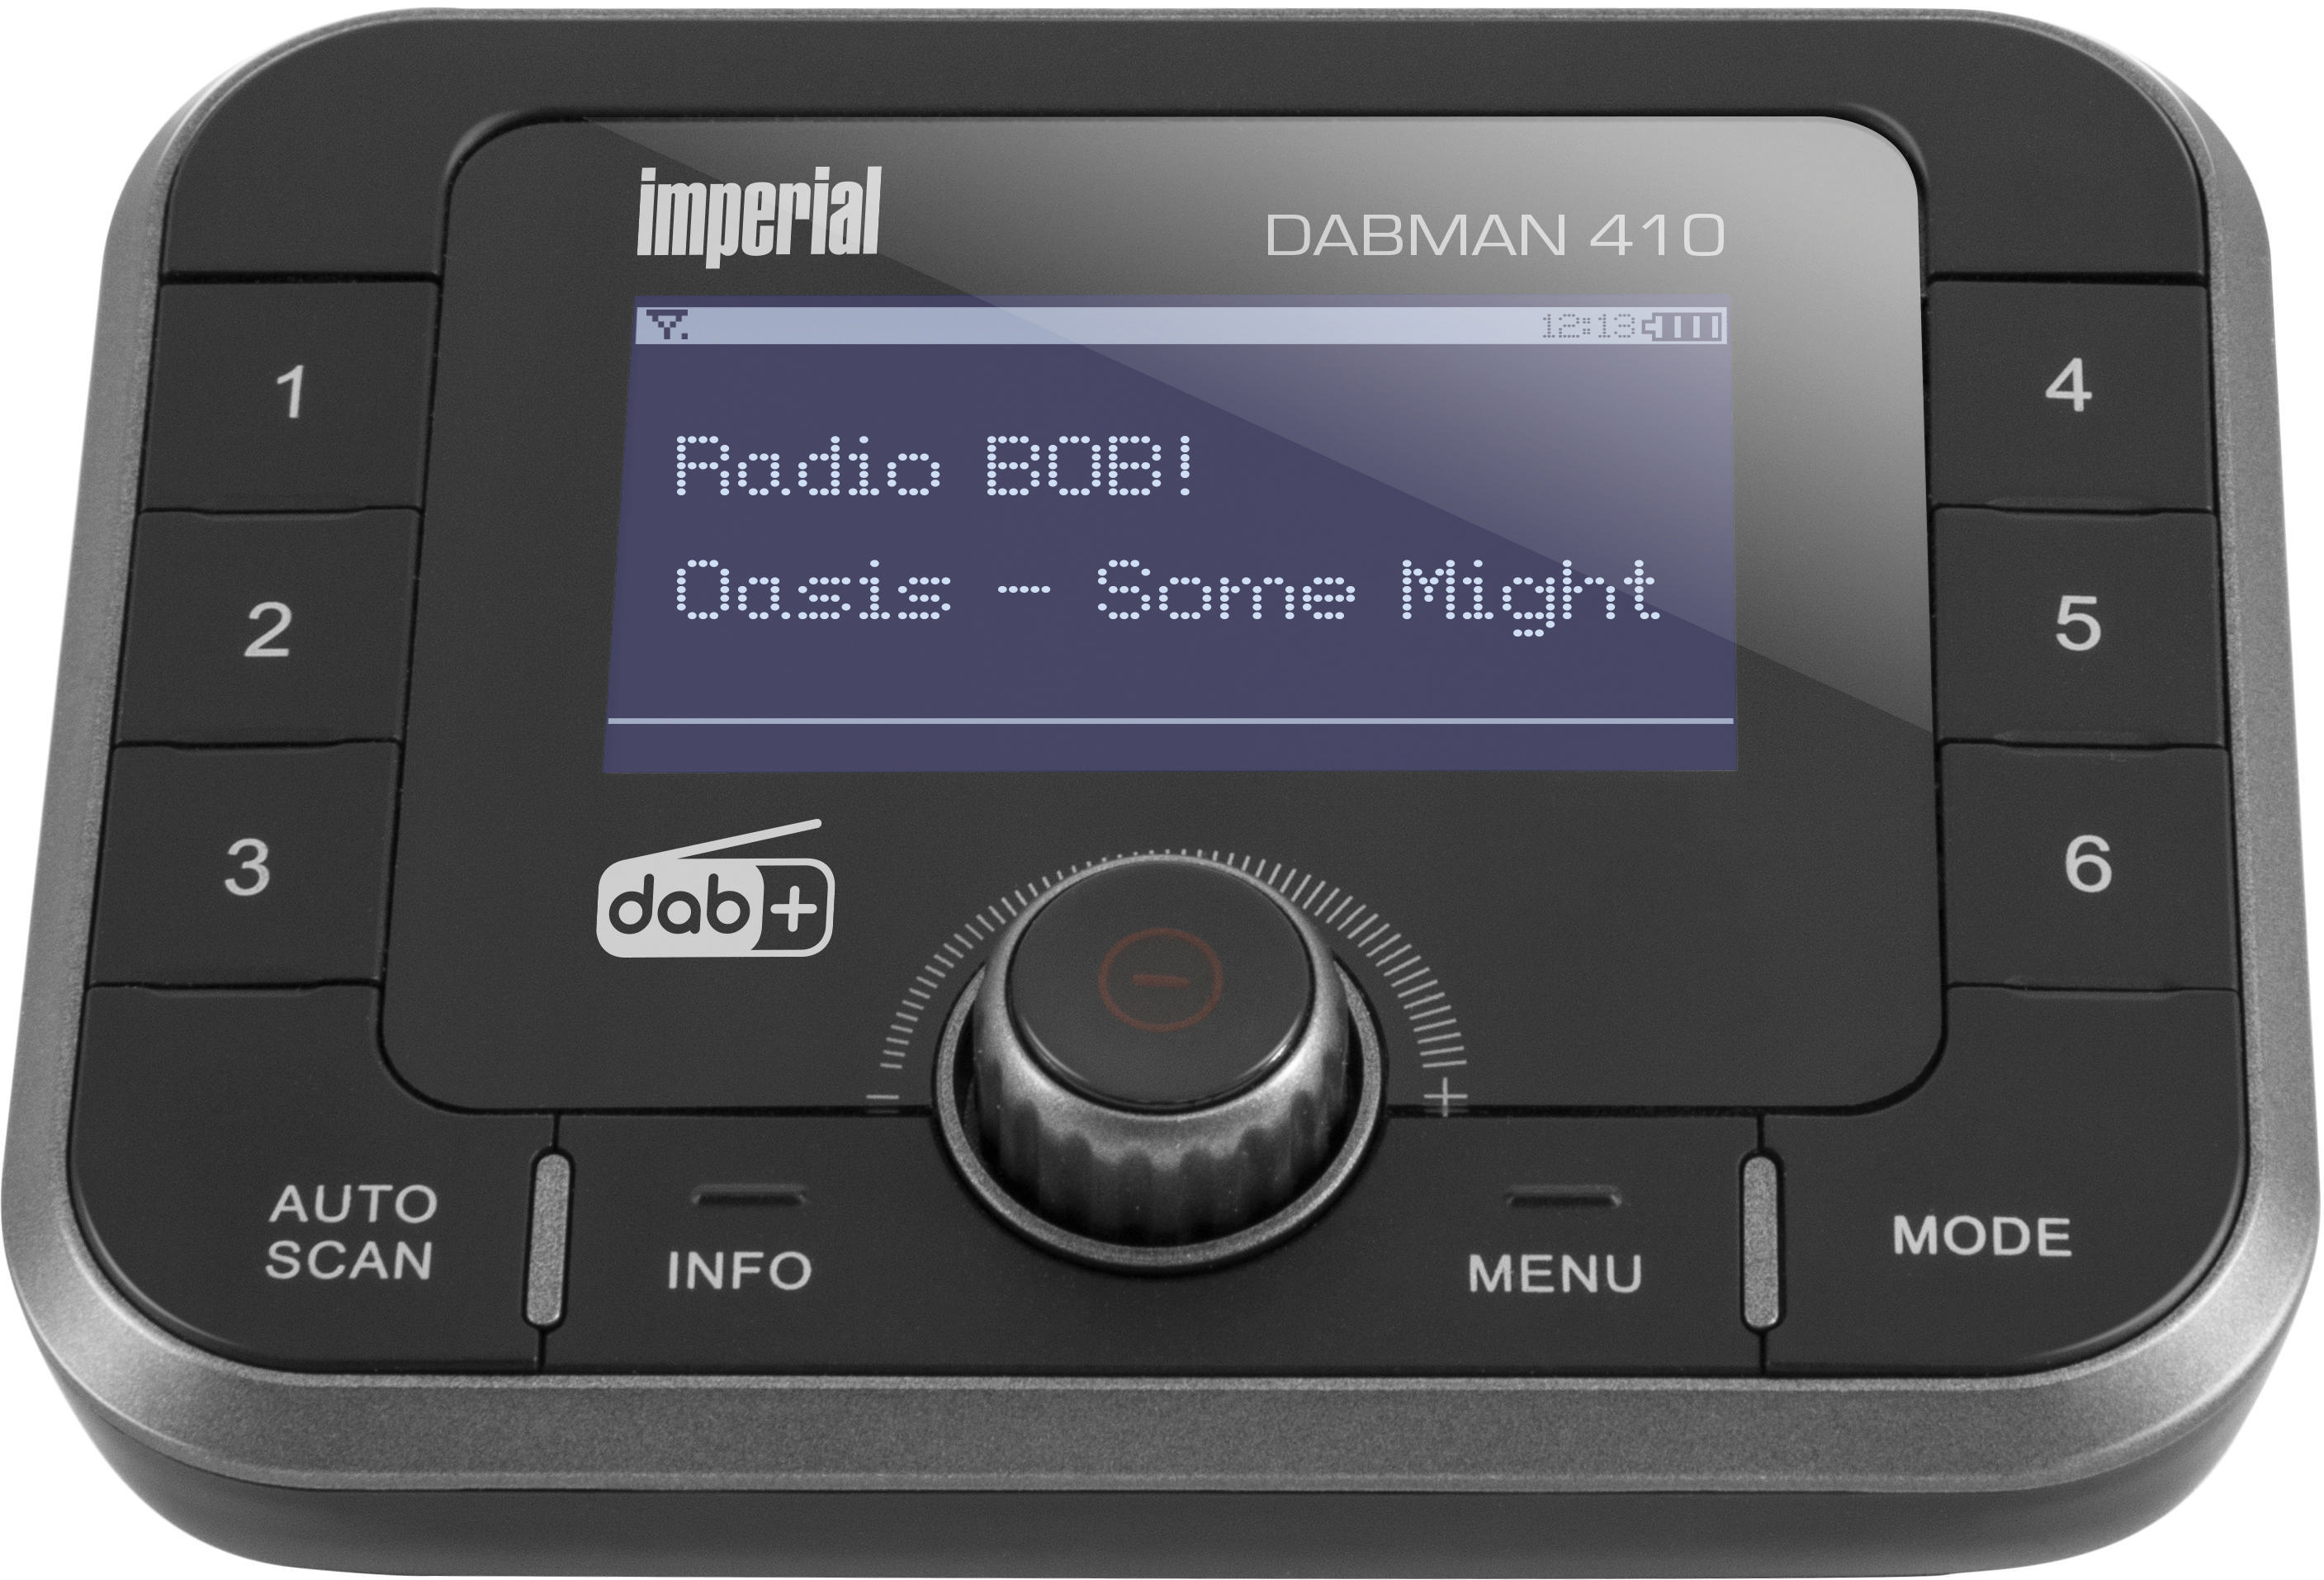 IMPERIAL DABMAN AM, / DAB+, DAB, Digitalradio Bluetooth, UKW, 410 DAB+ FM, Adapter, DAB+ HiFi Schwarz